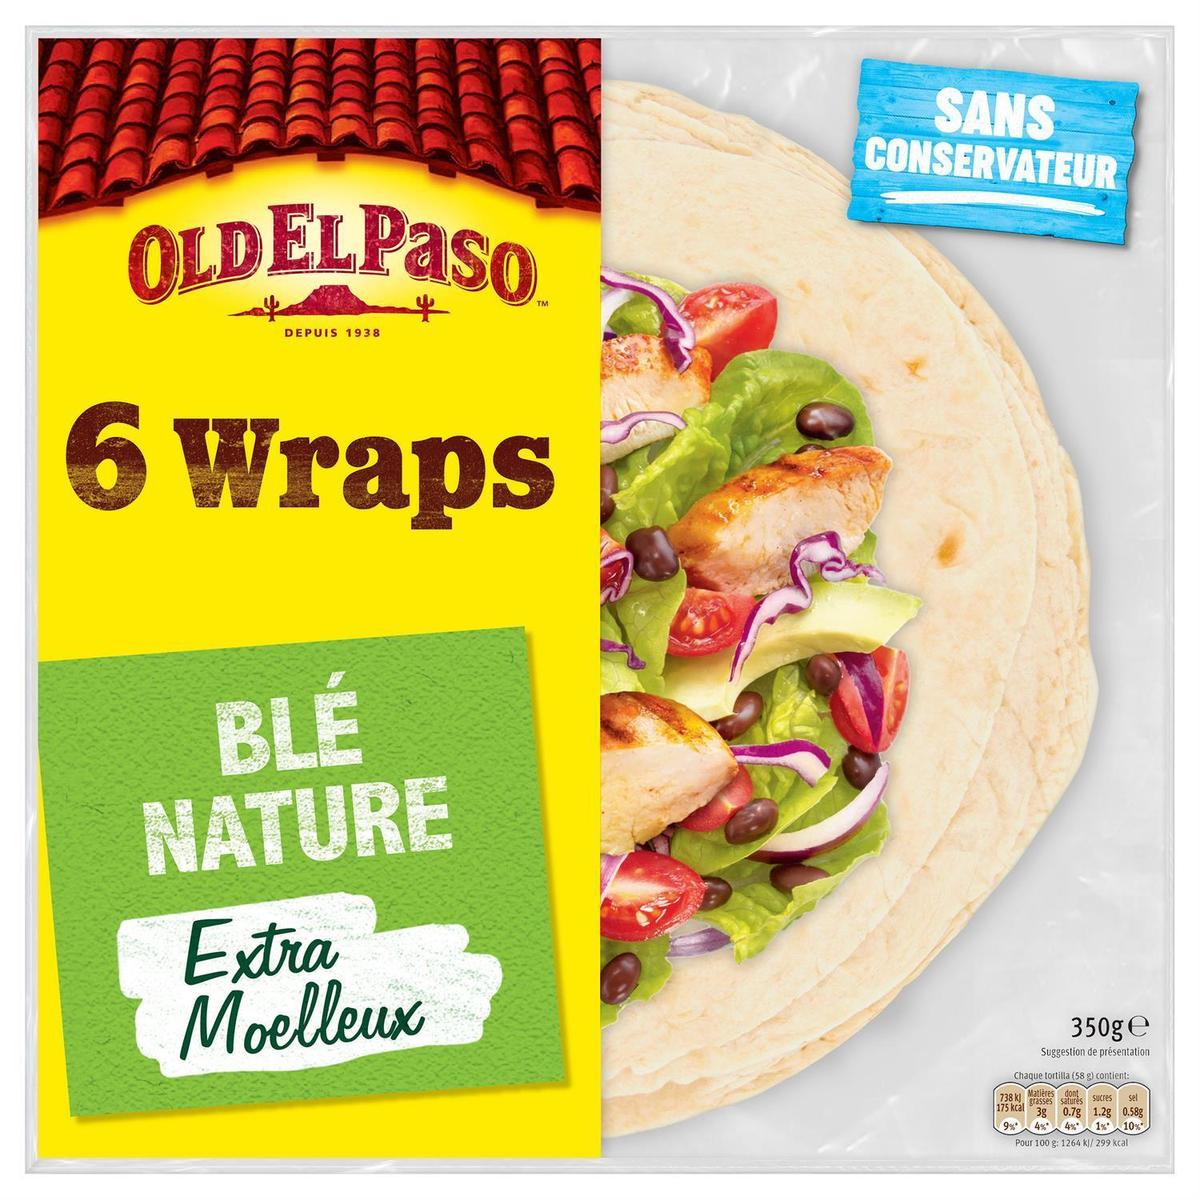 Acheter Old el Paso Kit pour tacos avec panadillas original doux, 200g